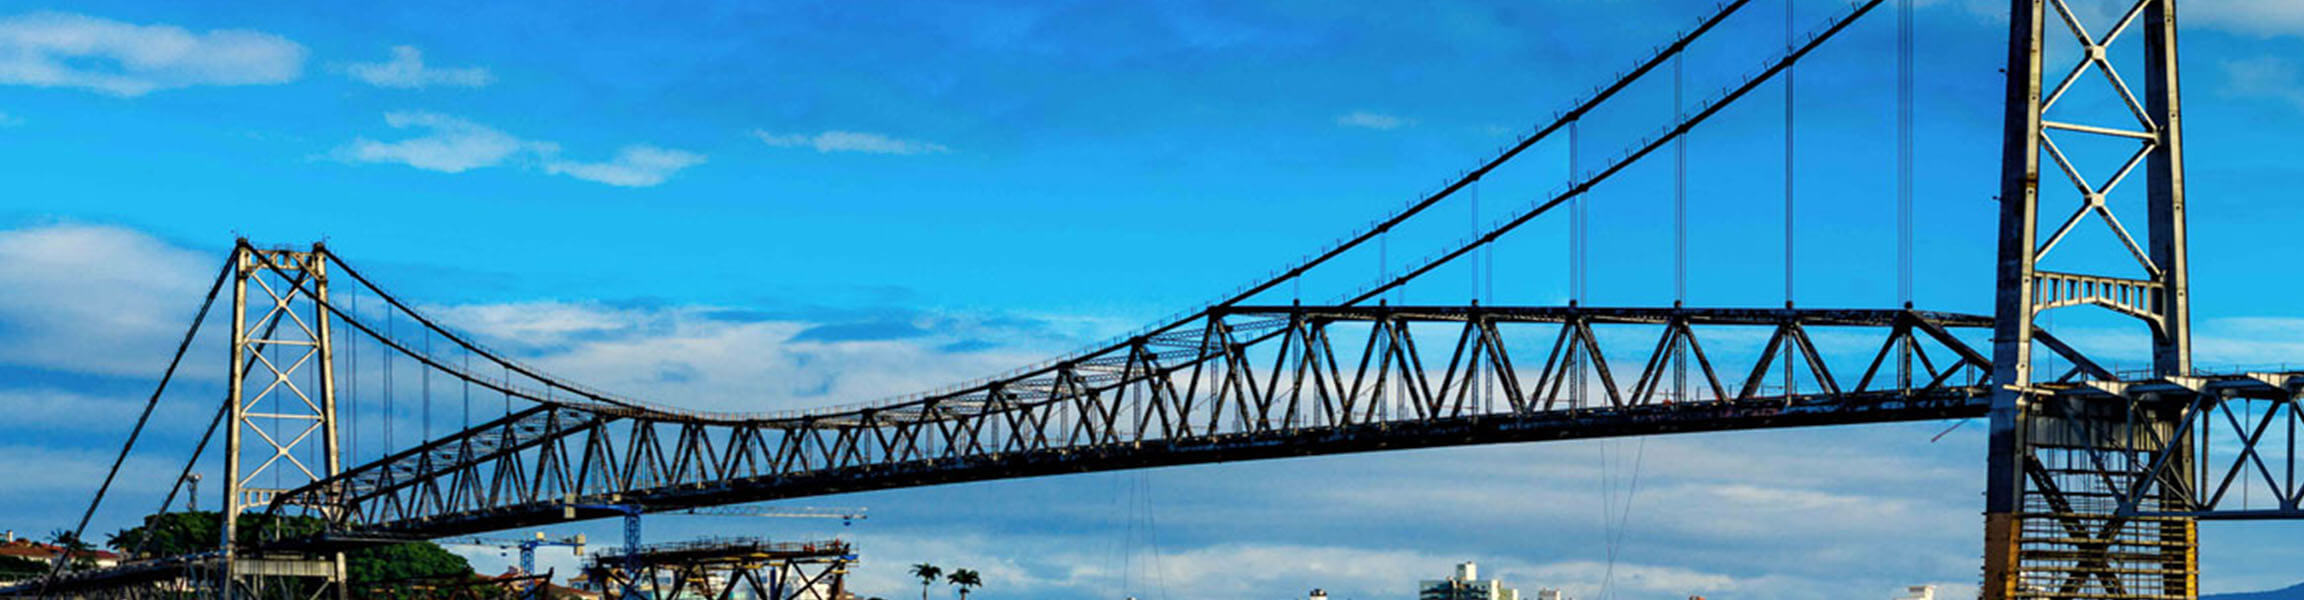 Imagem da ponte Hercílio Luz